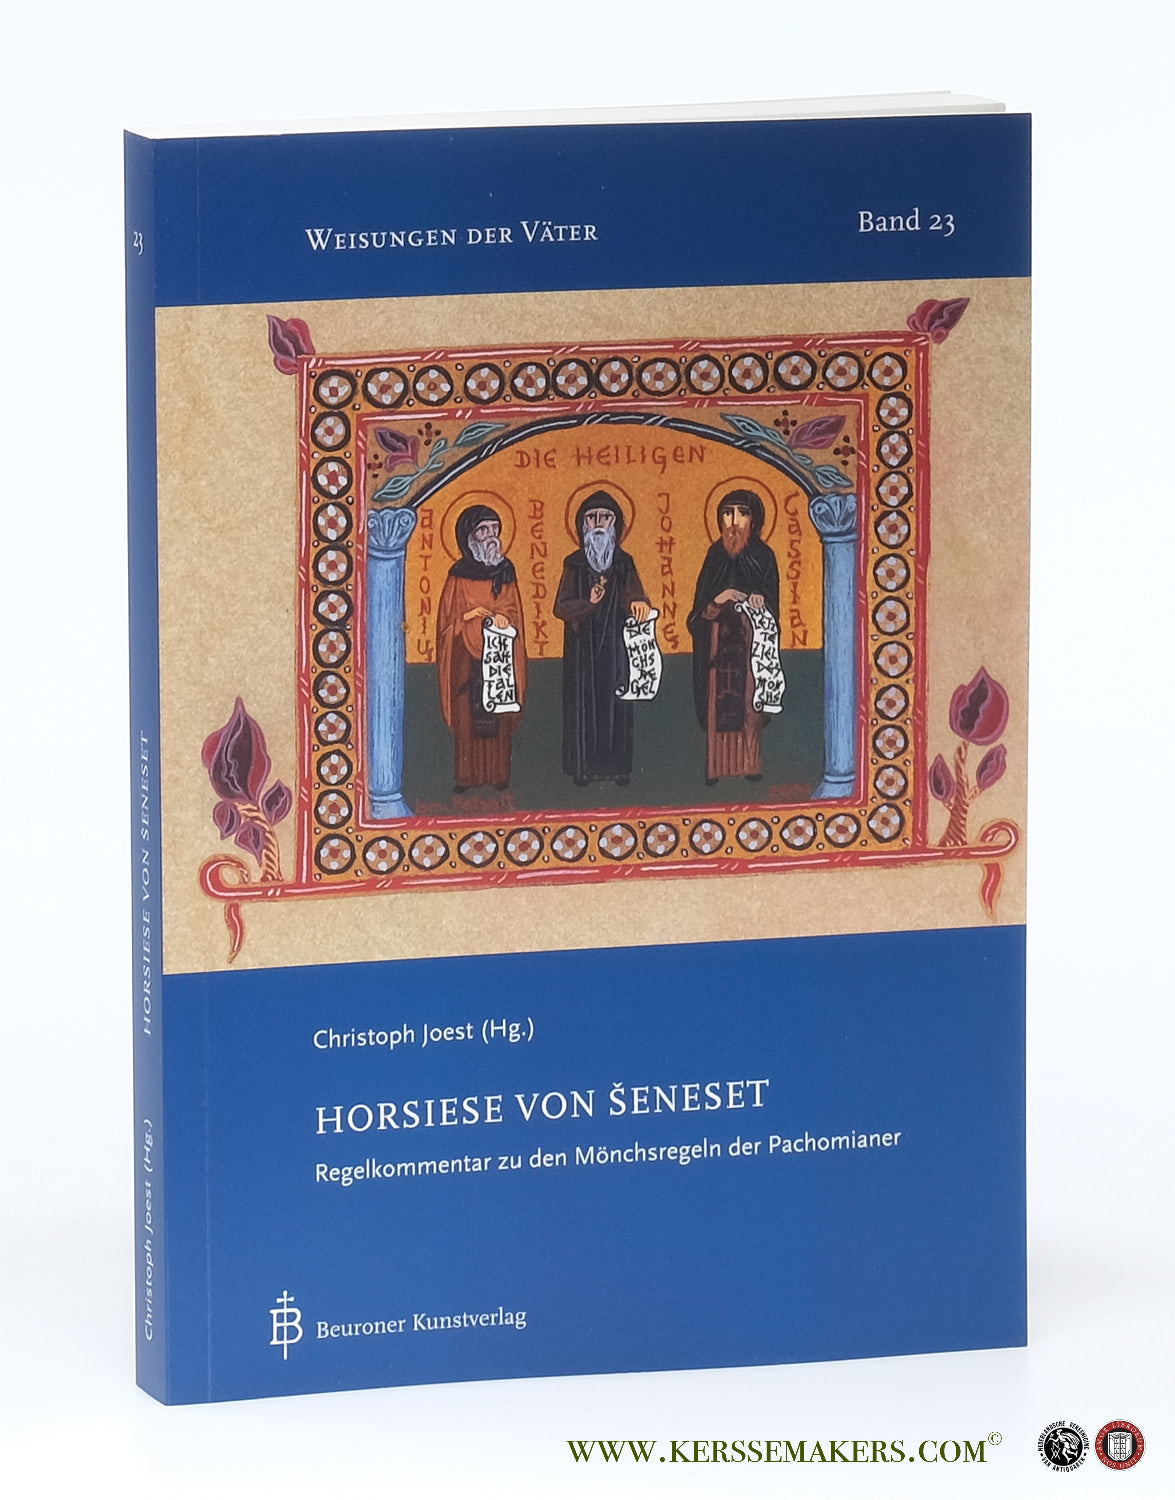 Horsiese von Seneset. Regelkommentar zu den Mönchsregeln der Pachomianer. - Joest, Christoph (ed.).